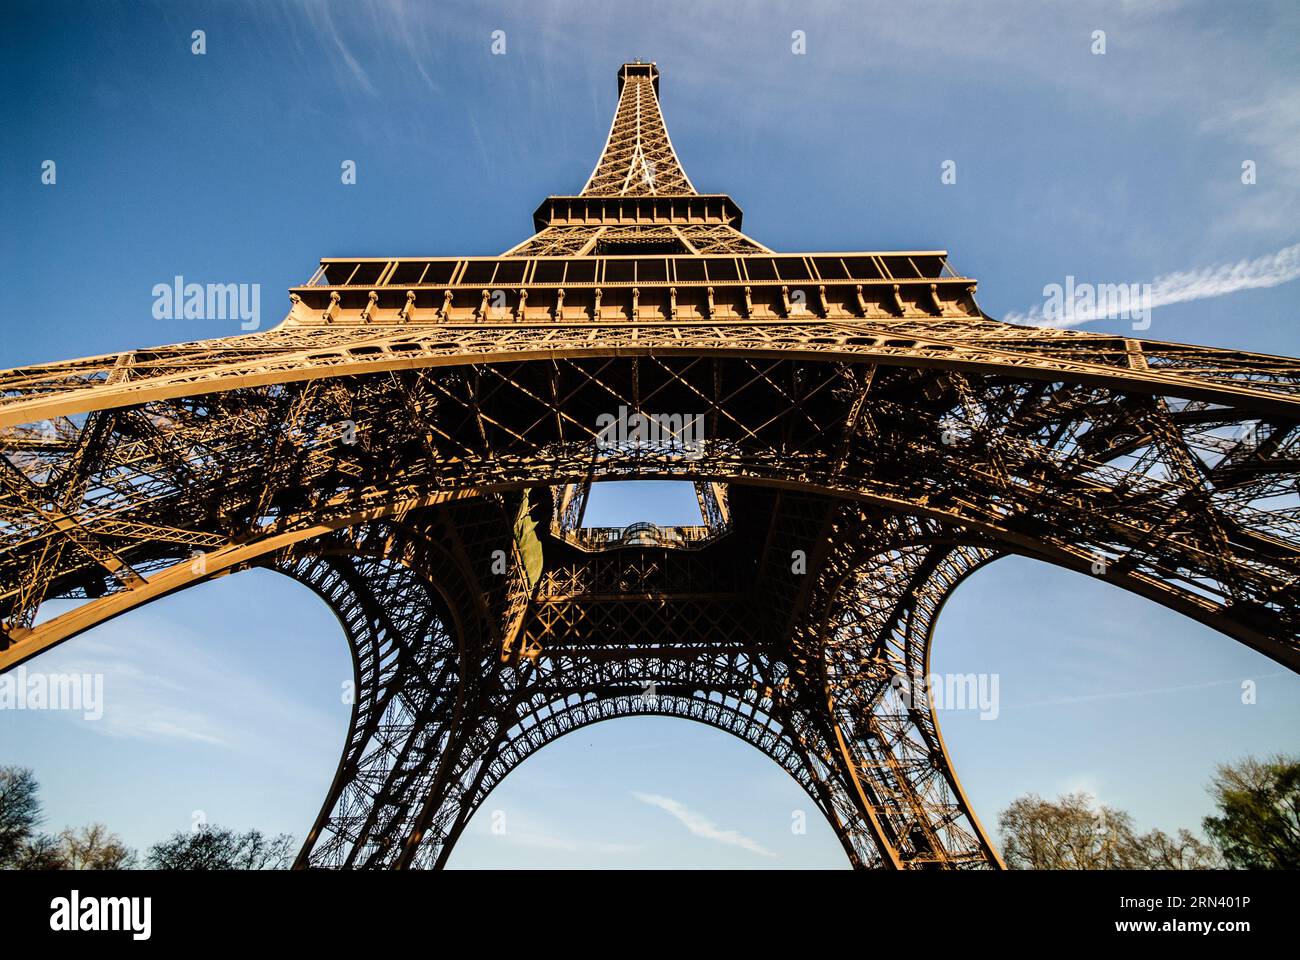 PARIGI, Francia - la Torre Eiffel si erge sullo skyline parigino, rappresentando un'iconica rappresentazione della maestria architettonica francese. Costruita nel 1889 come arco d'ingresso per la Fiera Mondiale del 1889, questa torre a reticolo di ferro non è solo un simbolo di Parigi, ma anche un emblema duraturo della realizzazione dell'ingegneria umana. Foto Stock